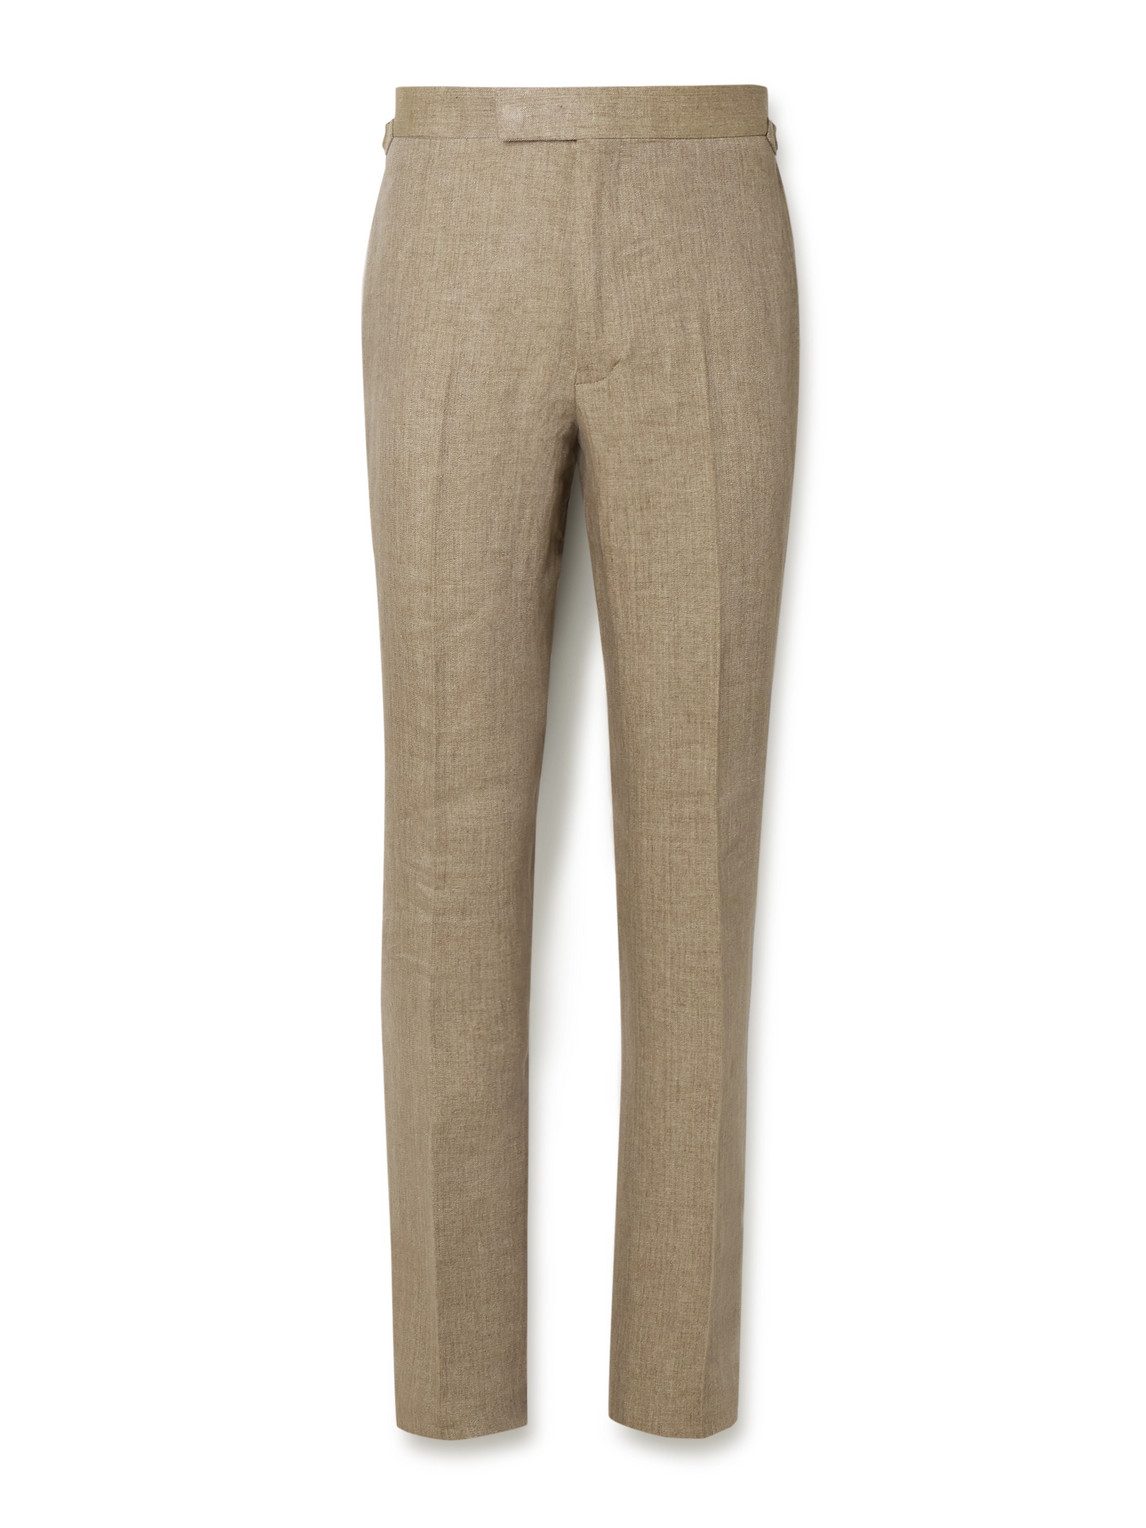 Argylle Slim-Fit Straight-Leg Herringbone Linen Trousers